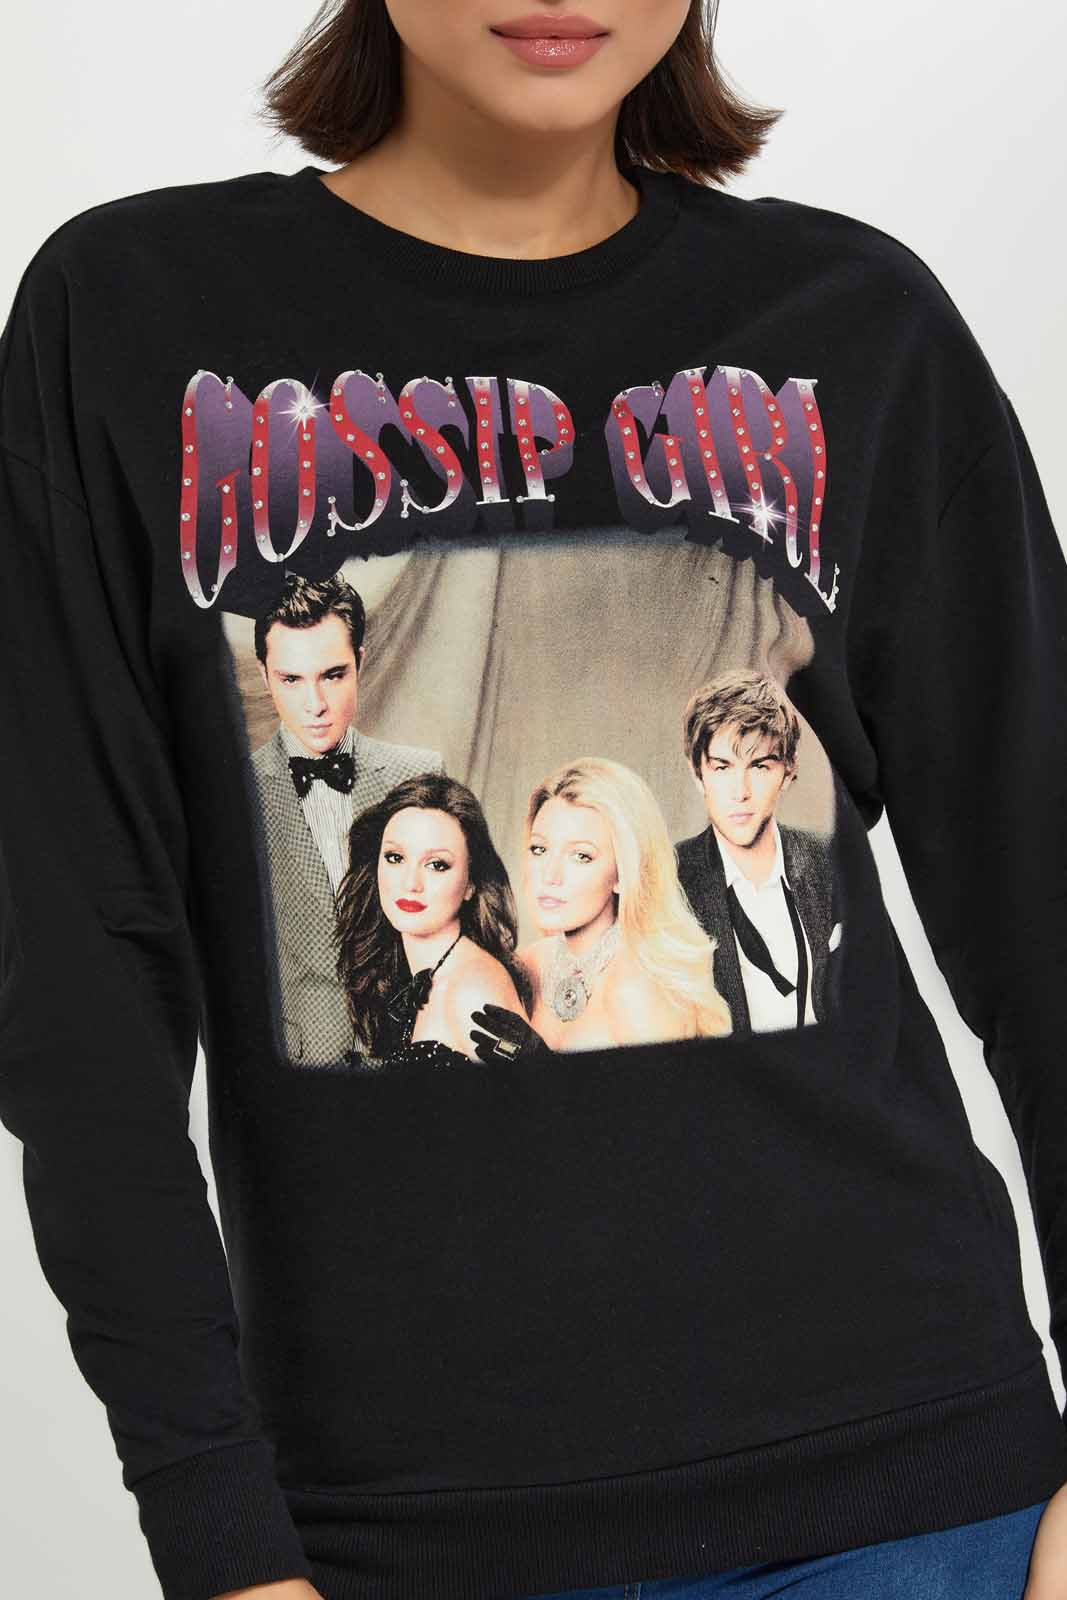 Gossip Girl Pictures Of Characters Women's Black Long Sleeve Sweatshirt-xxl  : Target